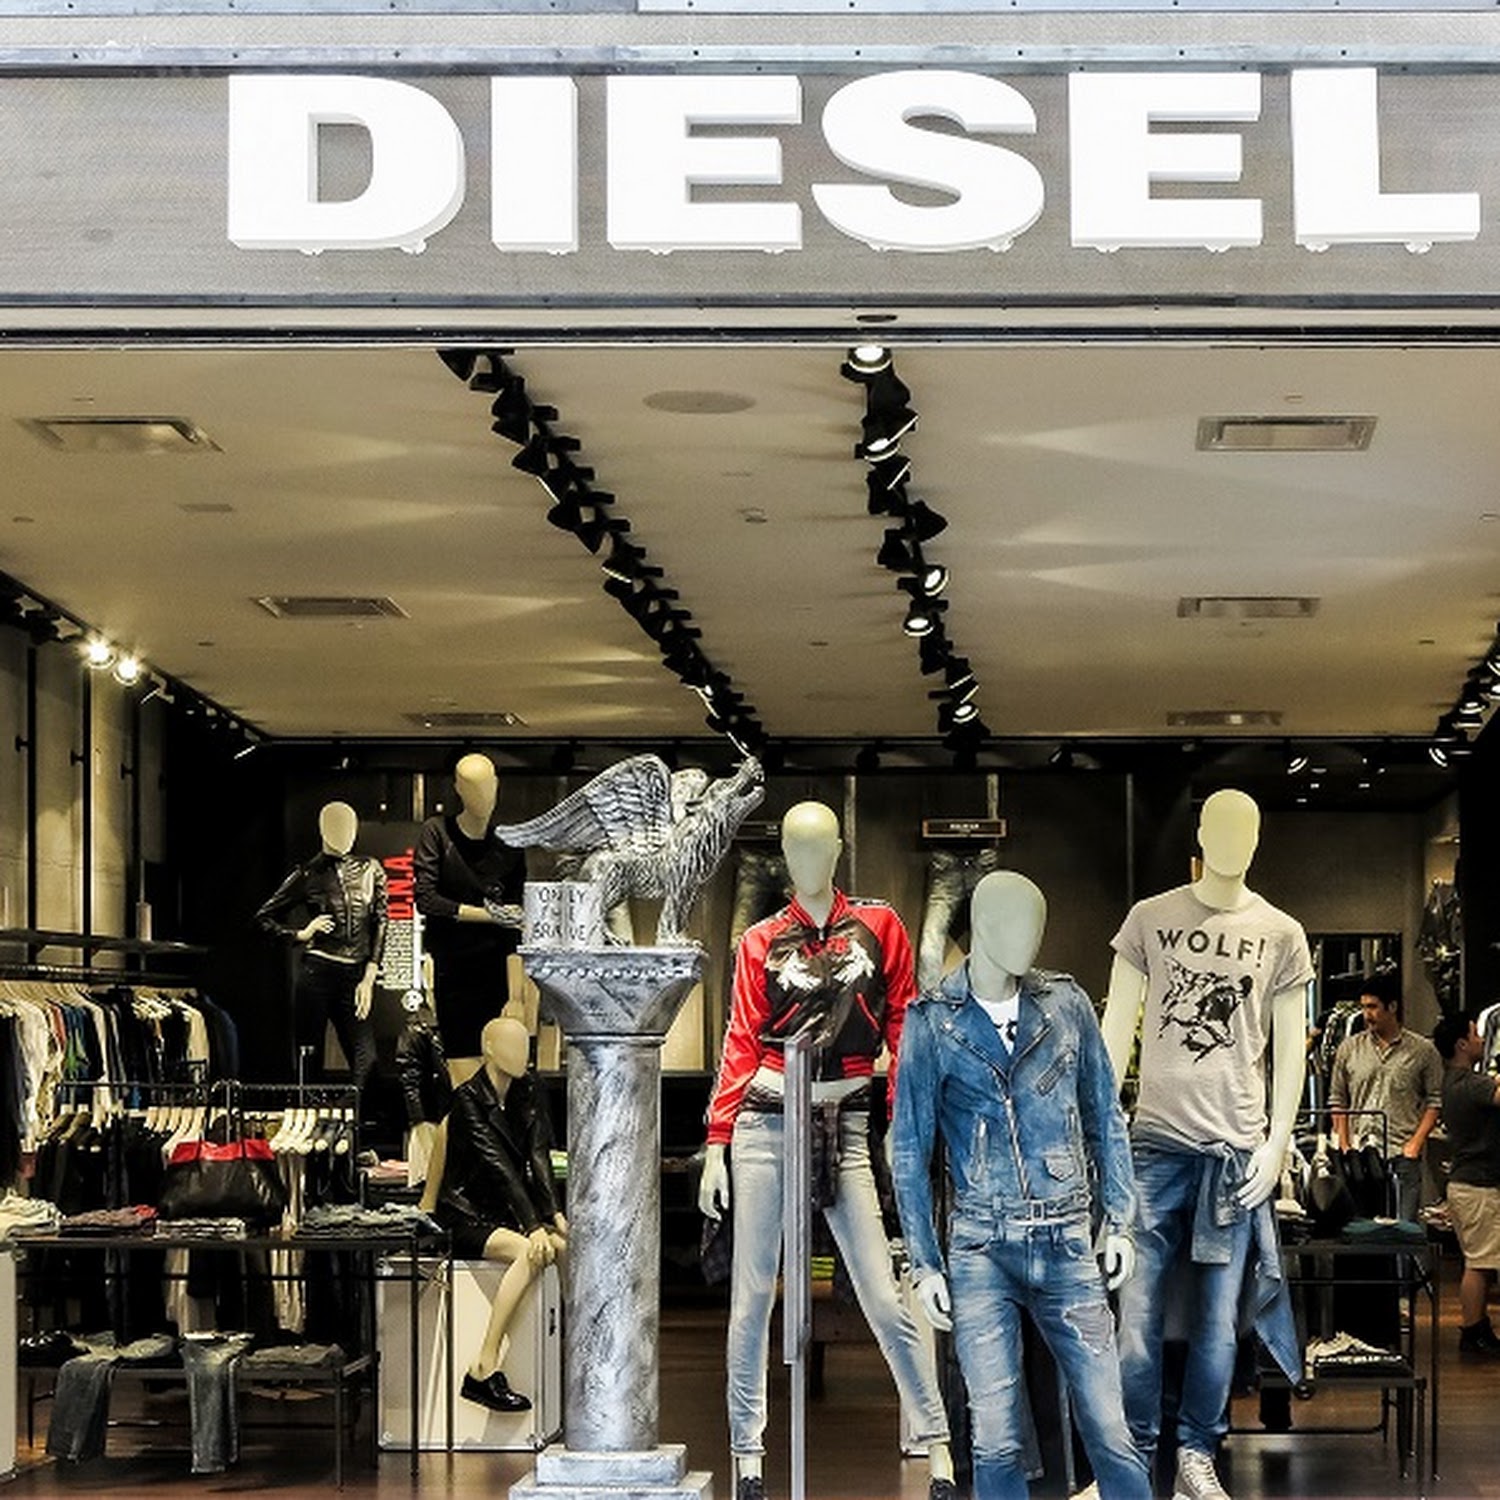 Græder Skærpe Joke Jeans maker Diesel USA files for bankruptcy